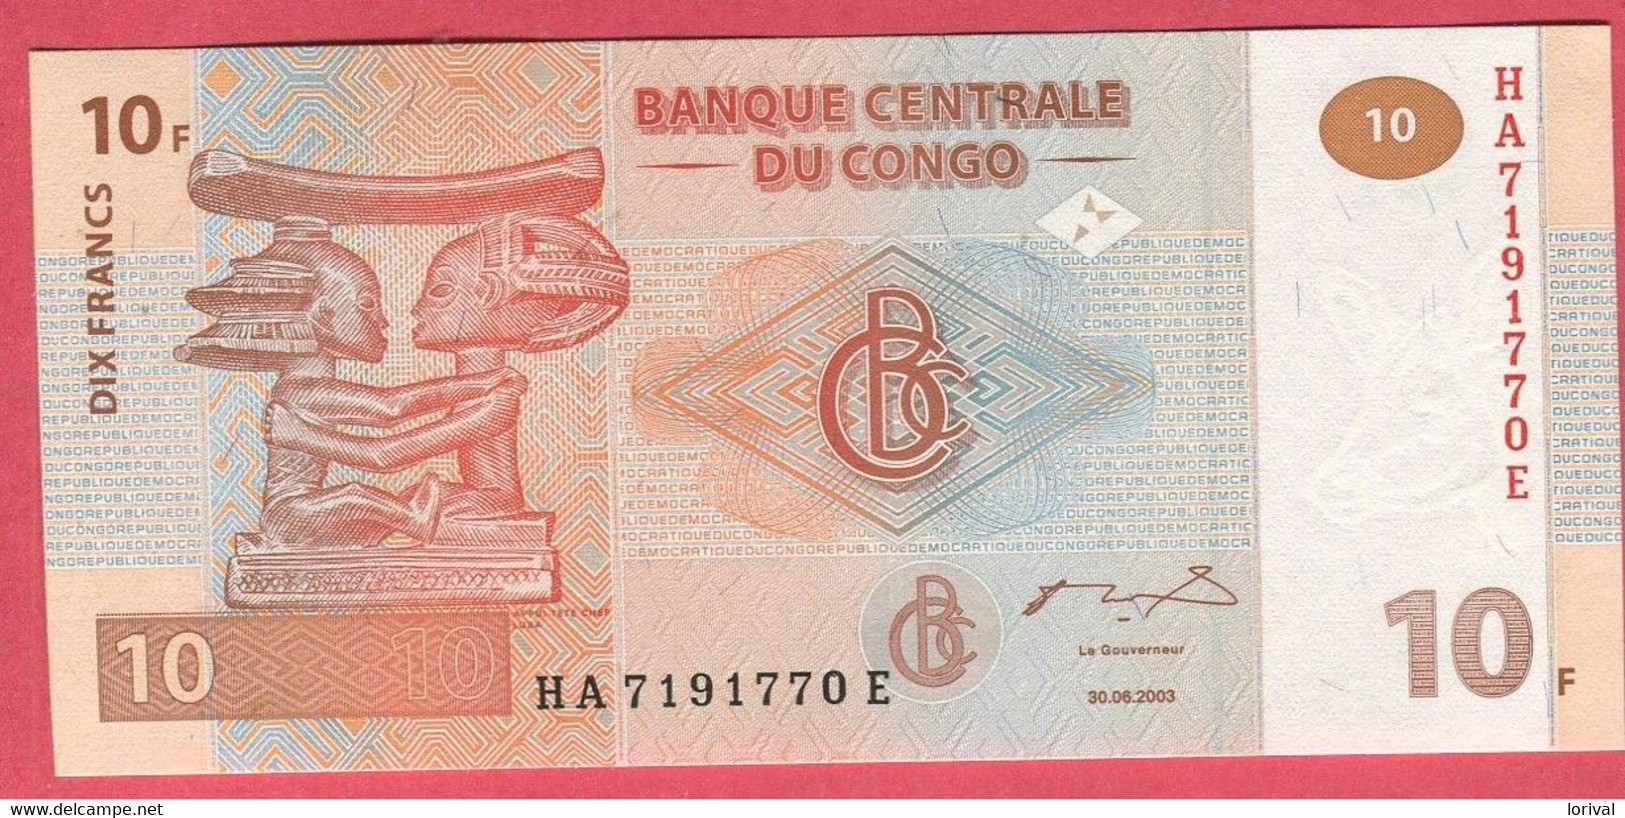 10 Francs 30/06/2003 Neuf .3 Euros - Republic Of Congo (Congo-Brazzaville)